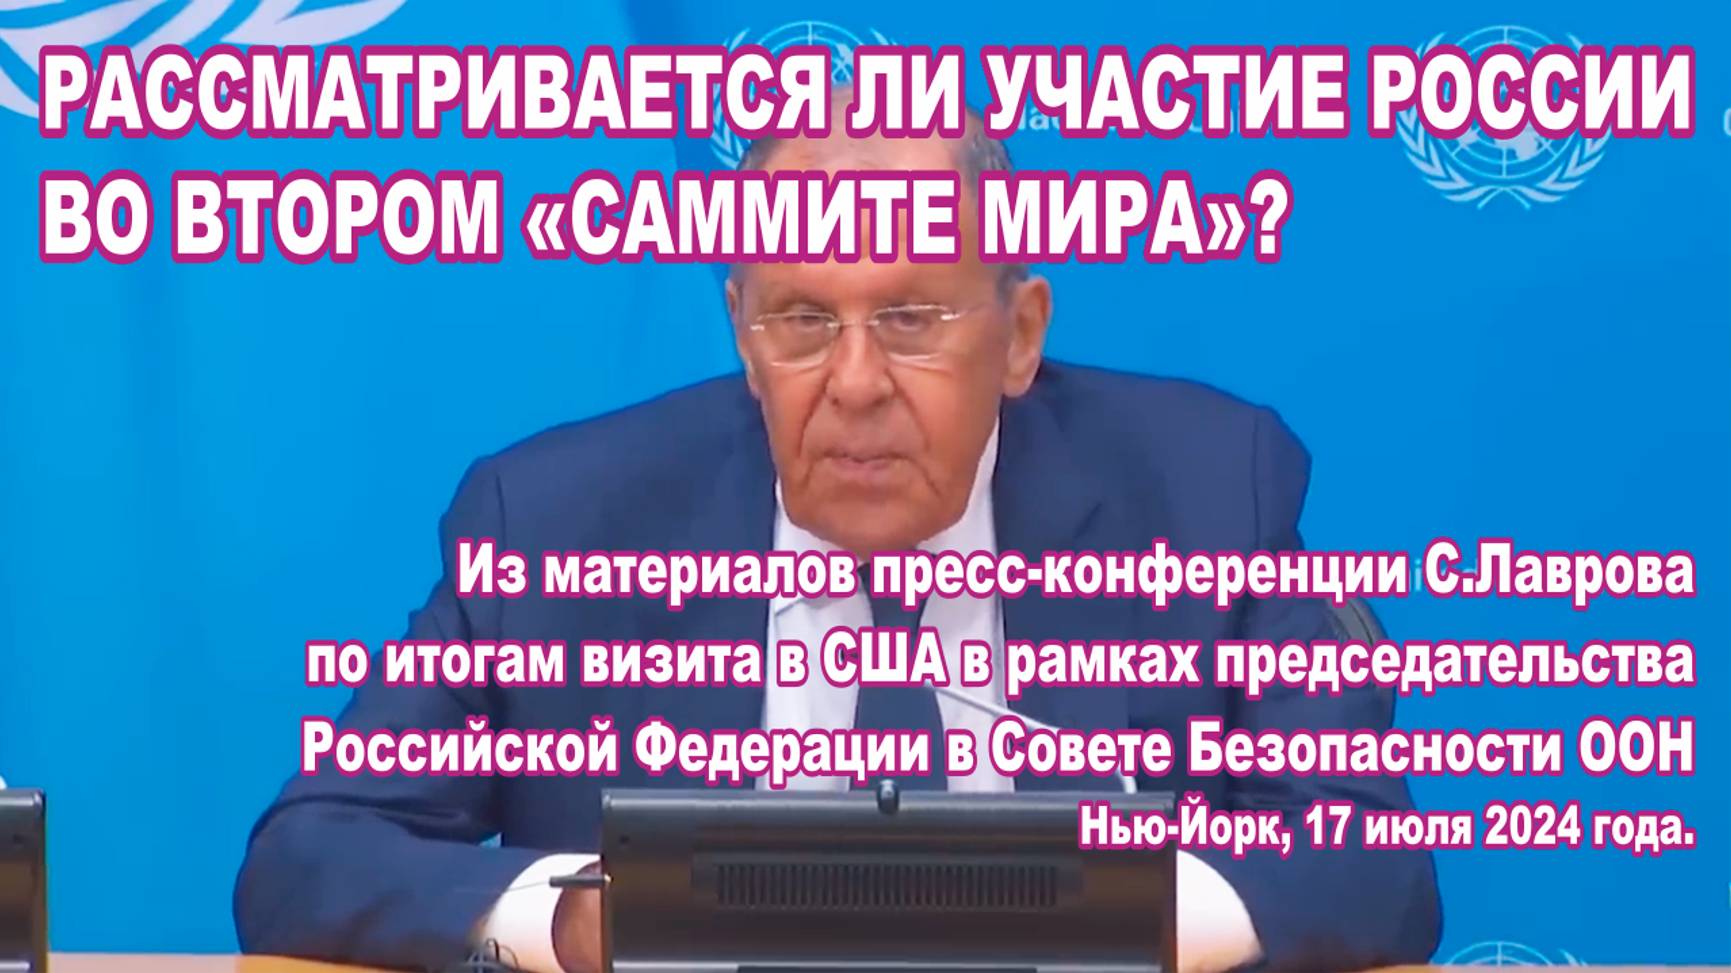 Из материалов пресс-конференции С.Лаврова 17.07.2024. Участвует ли Россия втором «саммите мира»?